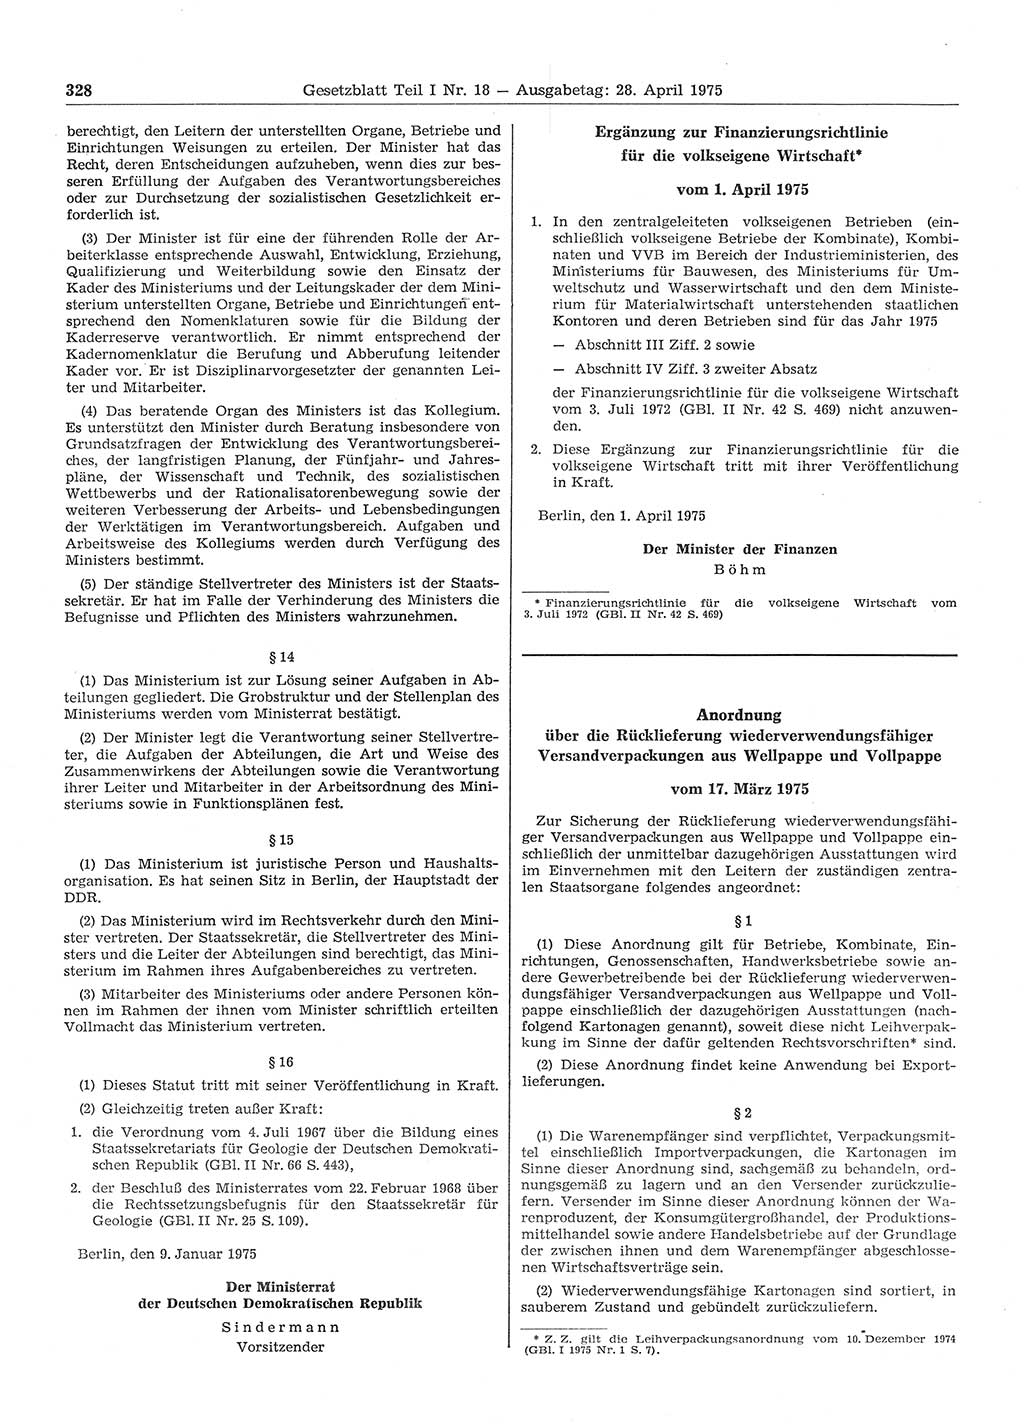 Gesetzblatt (GBl.) der Deutschen Demokratischen Republik (DDR) Teil Ⅰ 1975, Seite 328 (GBl. DDR Ⅰ 1975, S. 328)